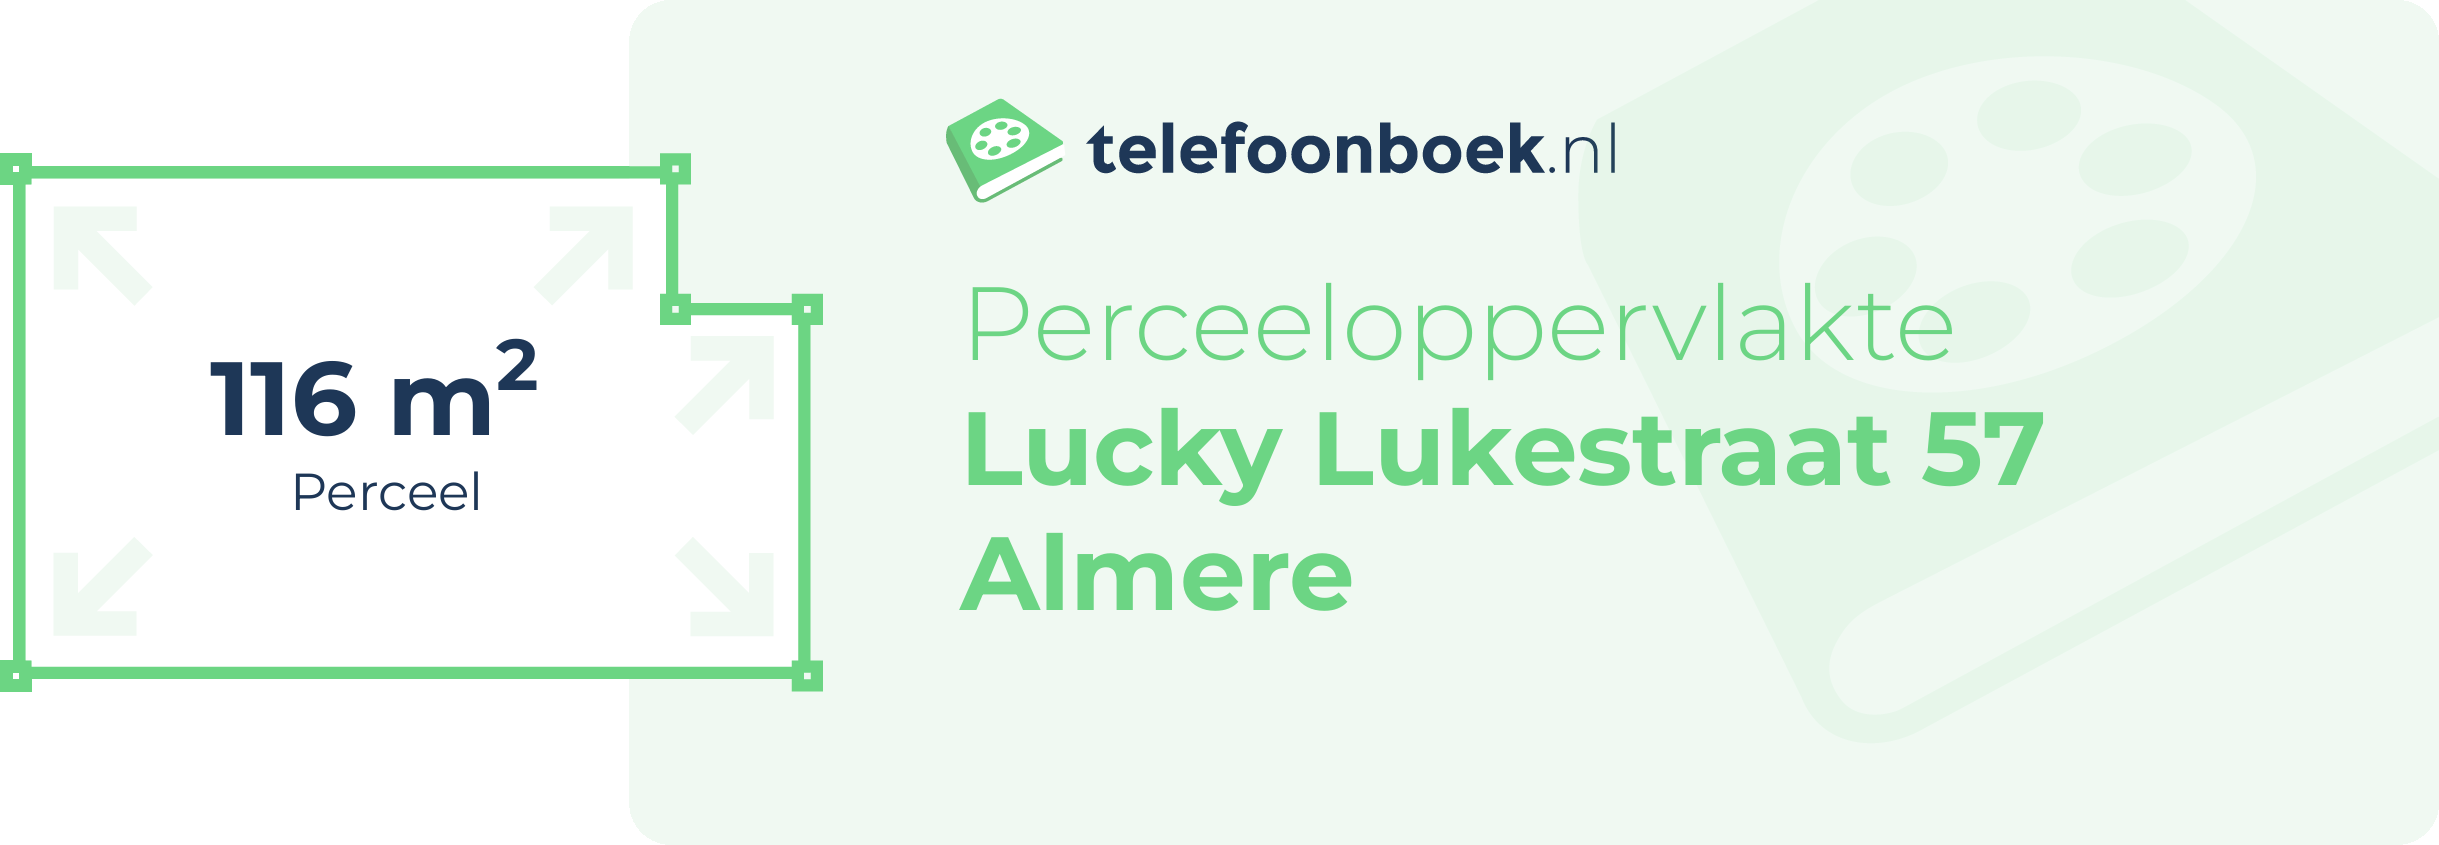 Perceeloppervlakte Lucky Lukestraat 57 Almere